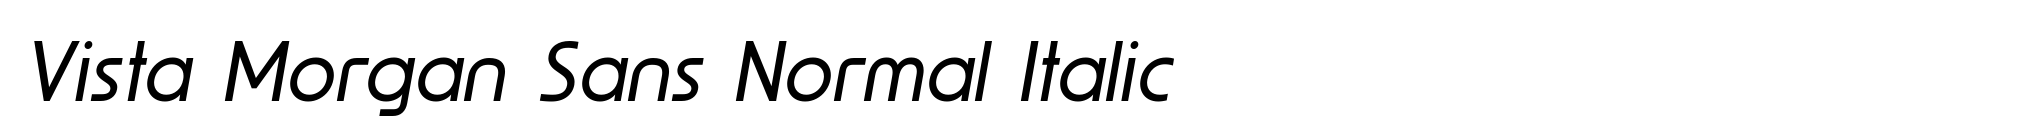 Vista Morgan Sans Normal Italic image